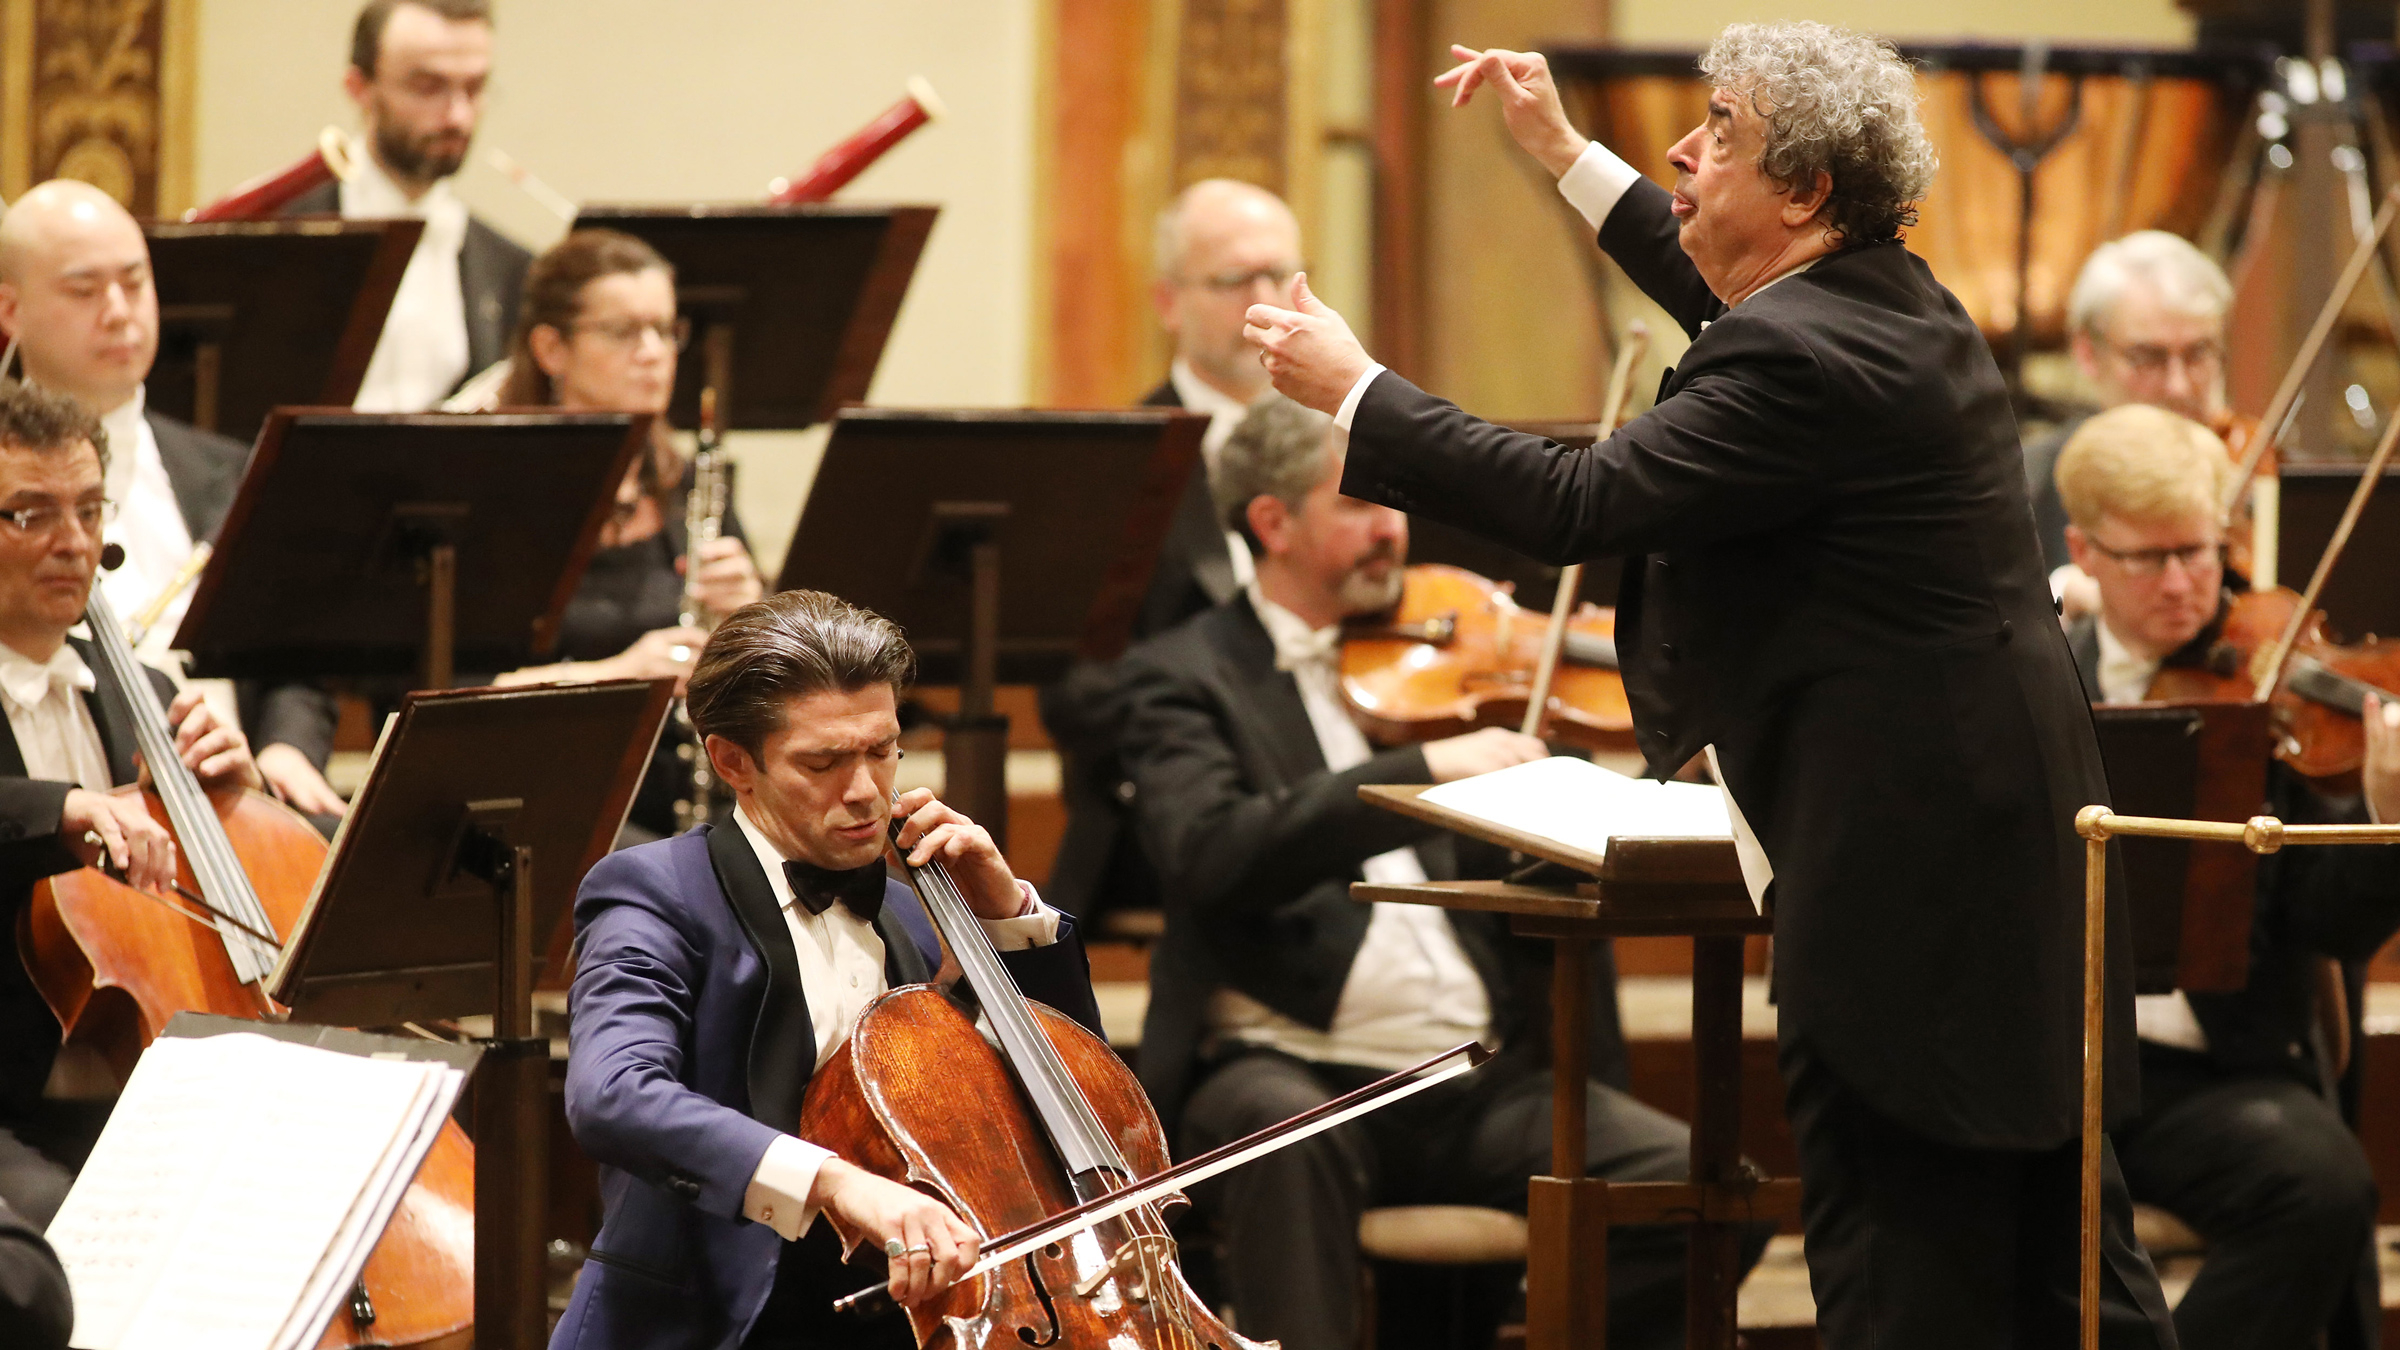 Česká filharmonie ve Vídni pod vedením Semjona Byčkova, na violoncello hraje Gautier Capuçon